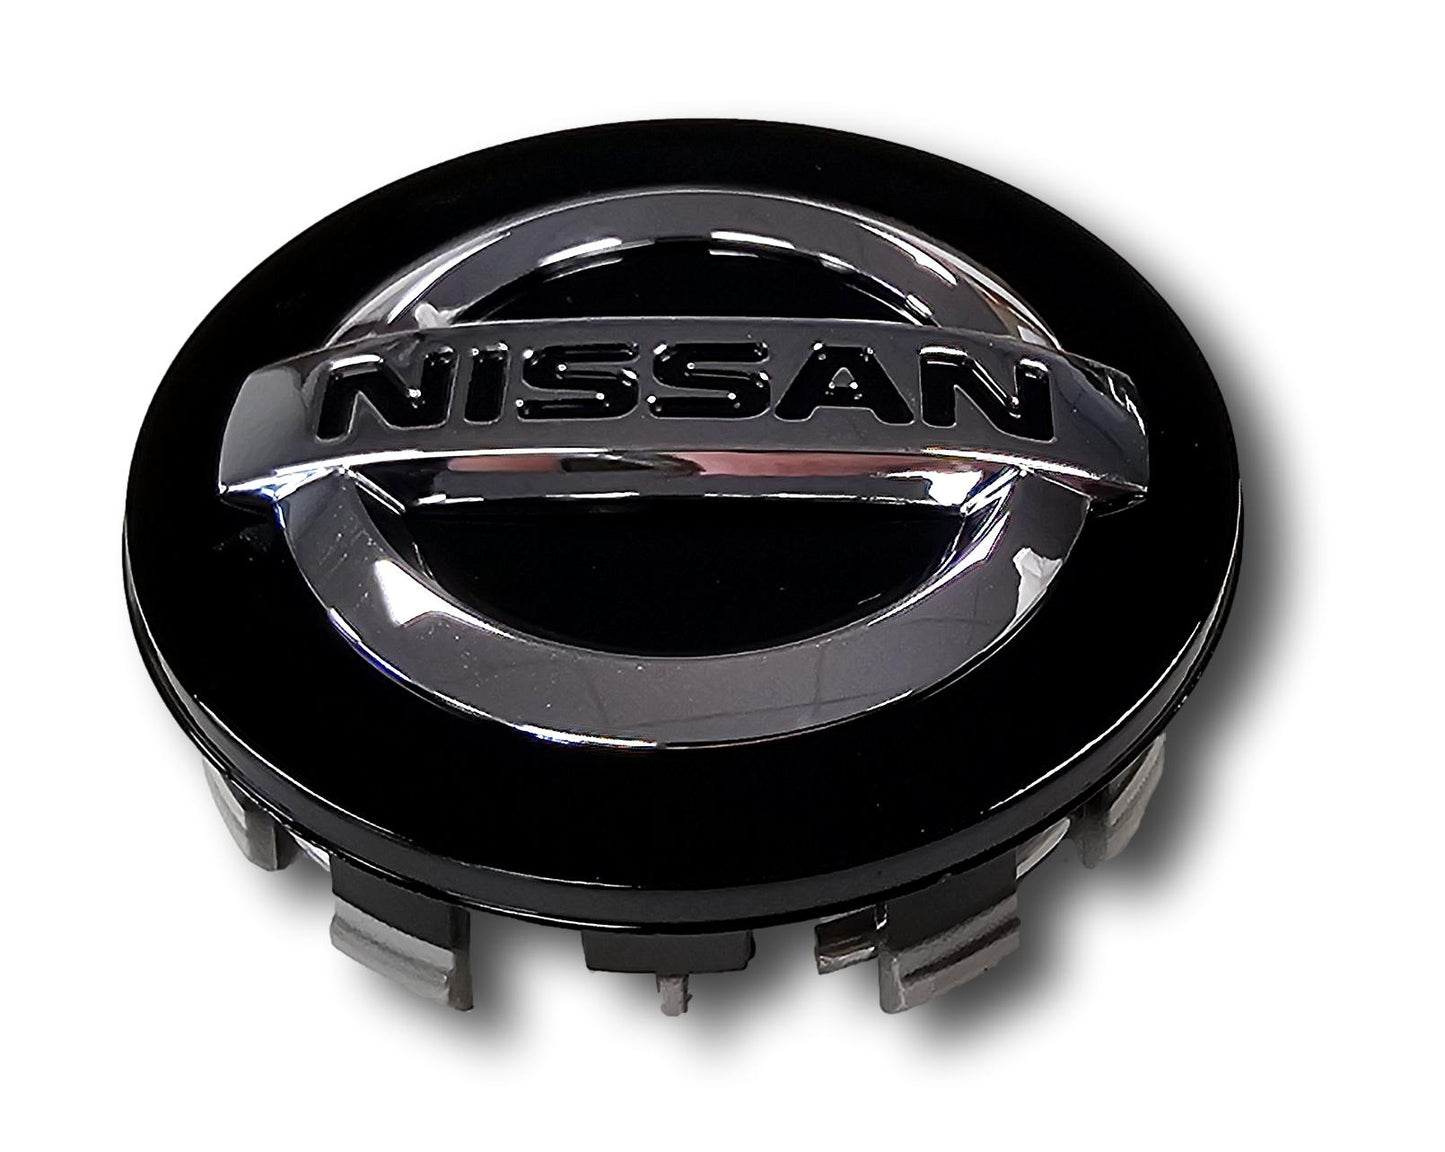 Echte neue Nissan Qashqai Wheel Center Cap Black Set von vier 40342 BR02A 2013> 21